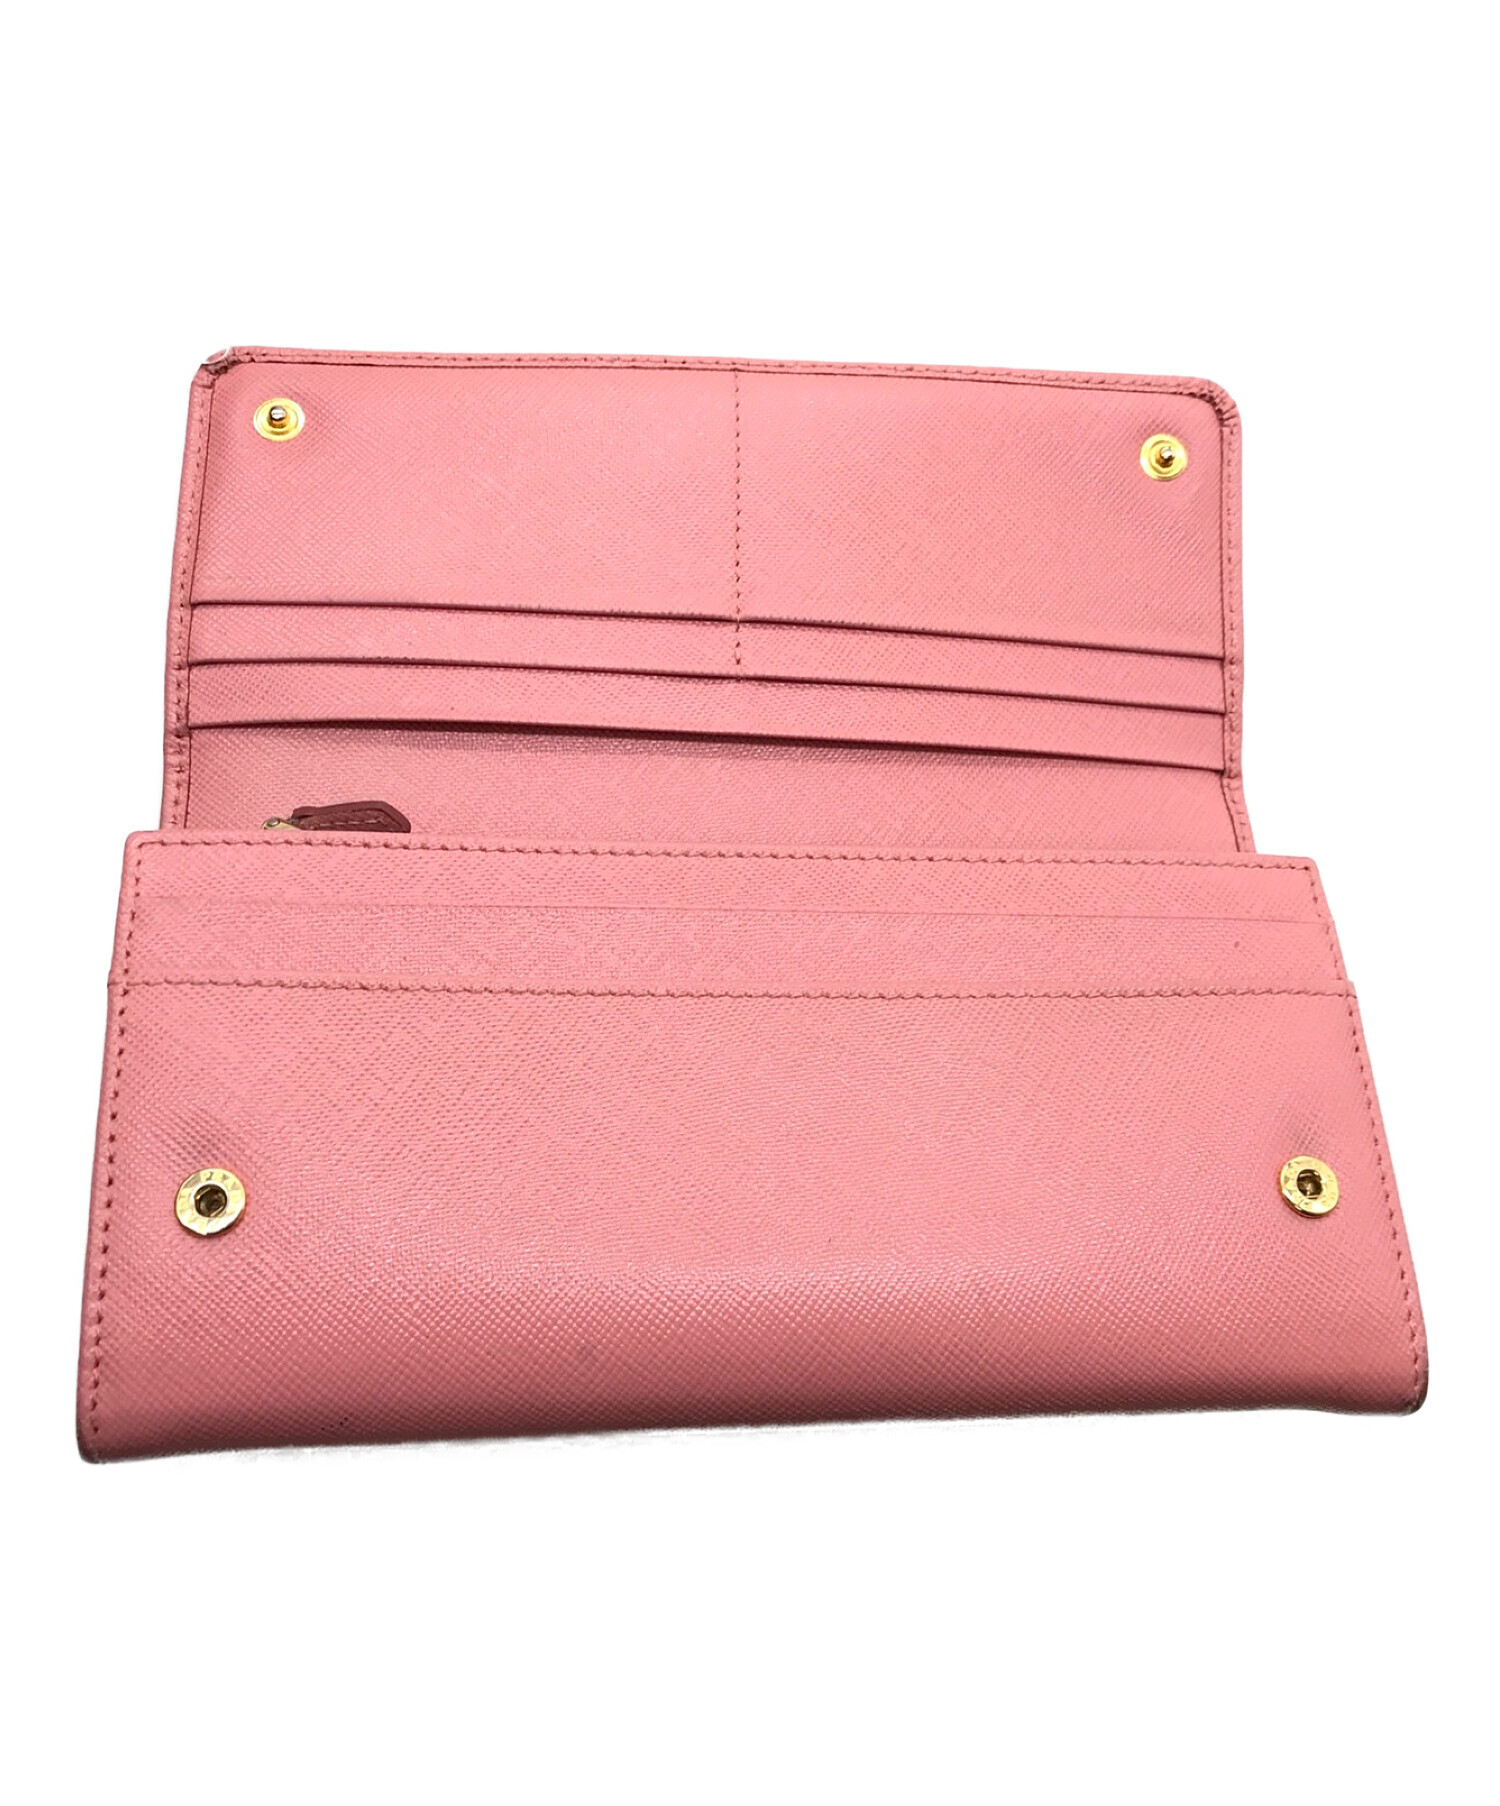 PRADA (プラダ) 長財布 ピンク サイズ:実寸サイズにてご確認ください。